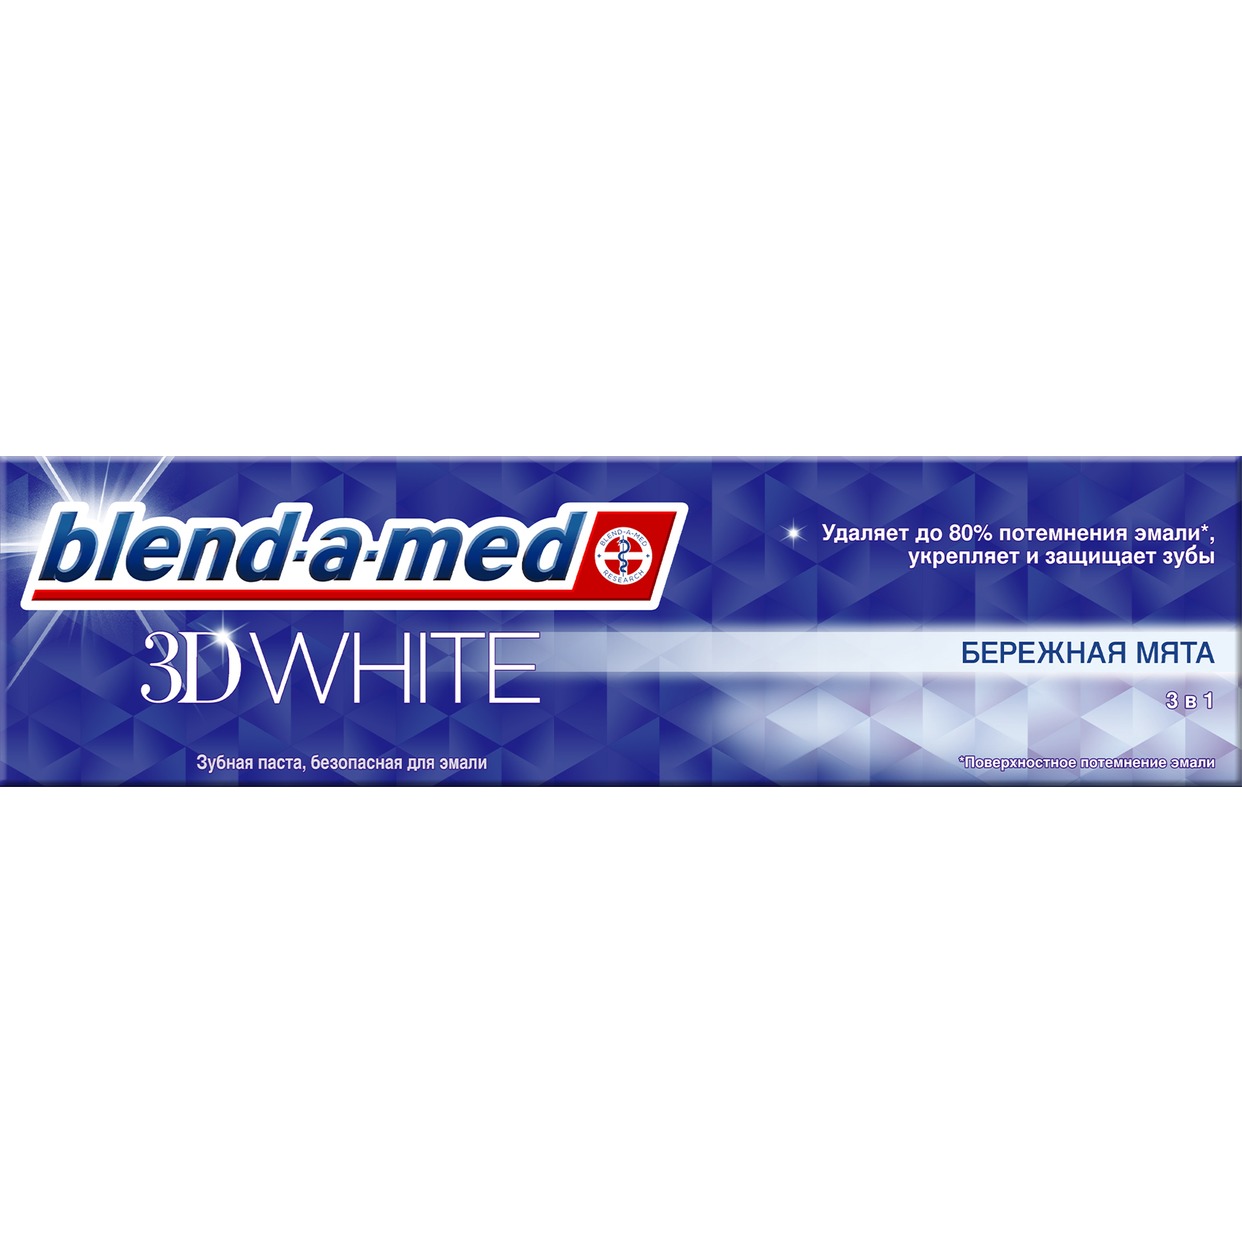 Зубная паста Blend A Med, бережная мята, 100 мл по акции в Пятерочке